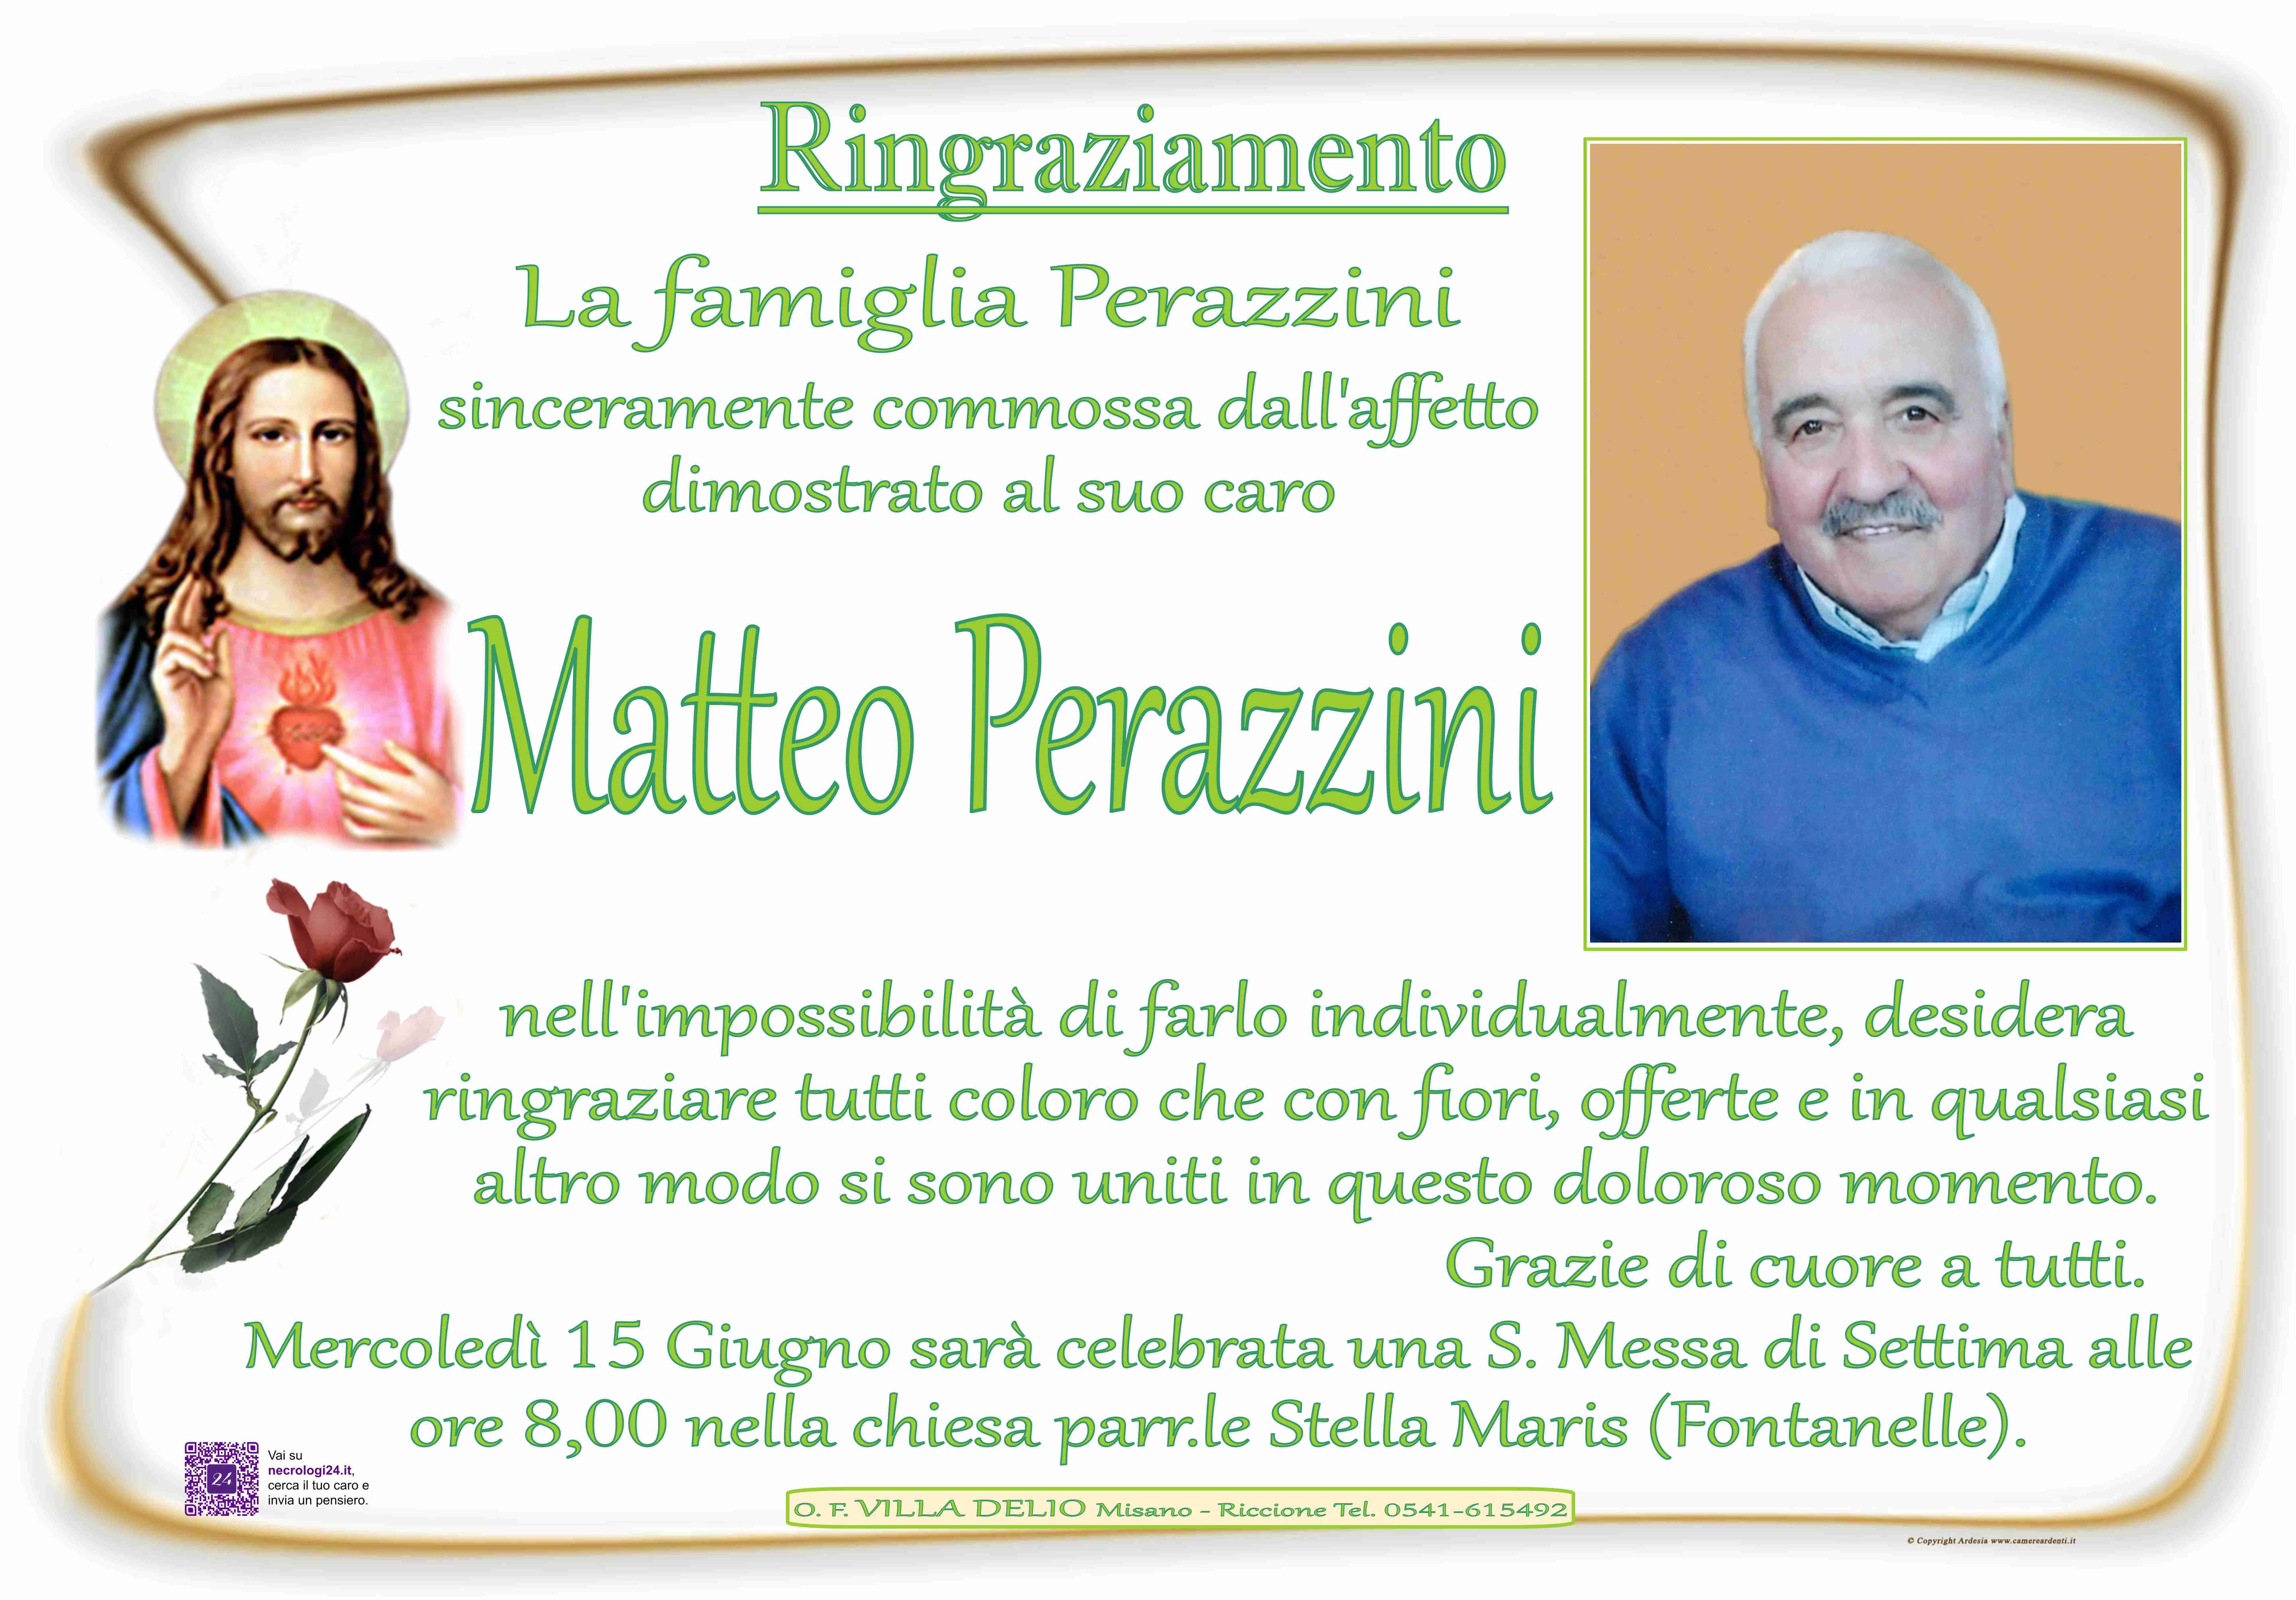 Matteo Perazzini